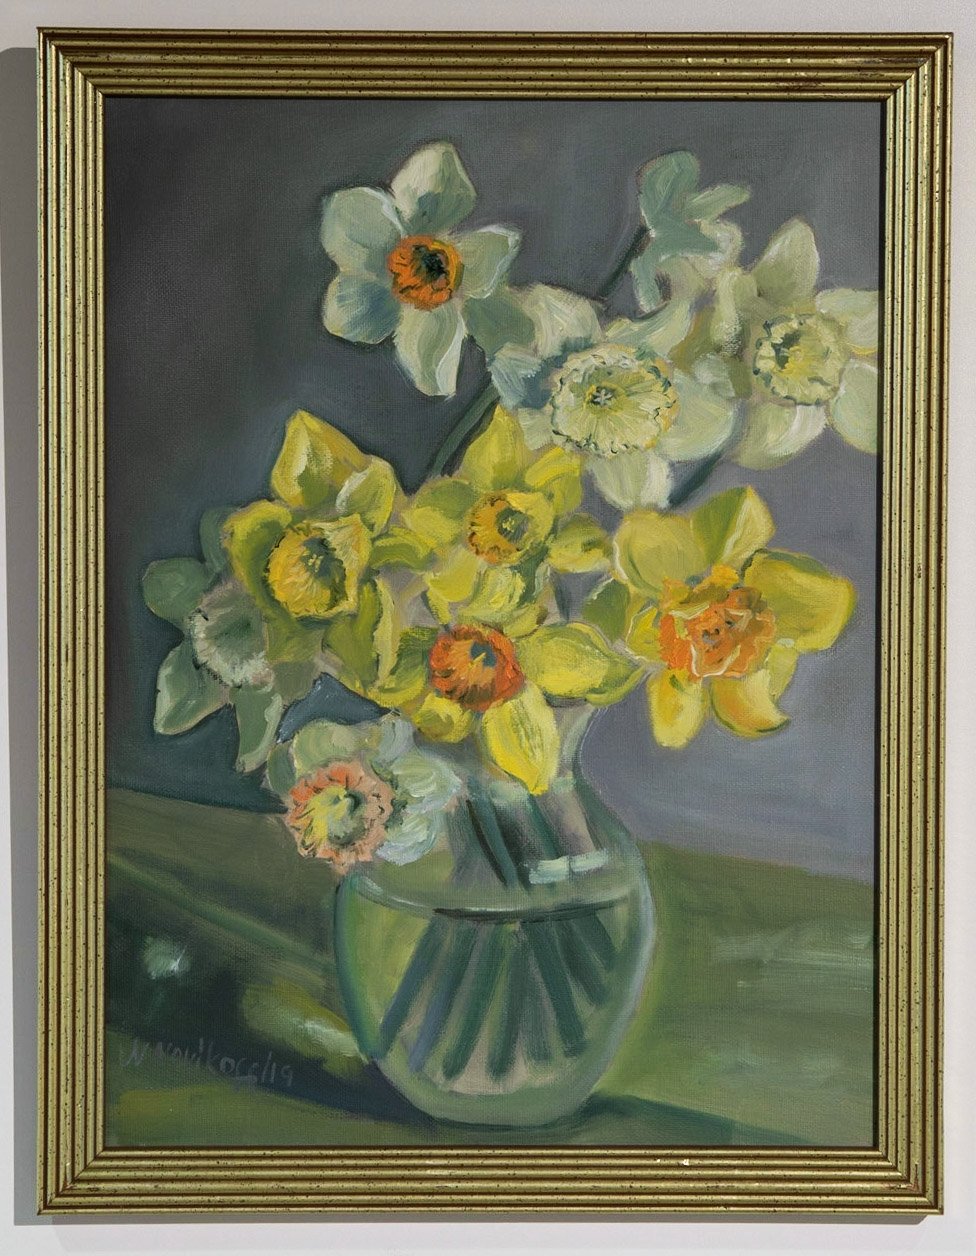 Natalia Novikoff, "Daffodils," Oil